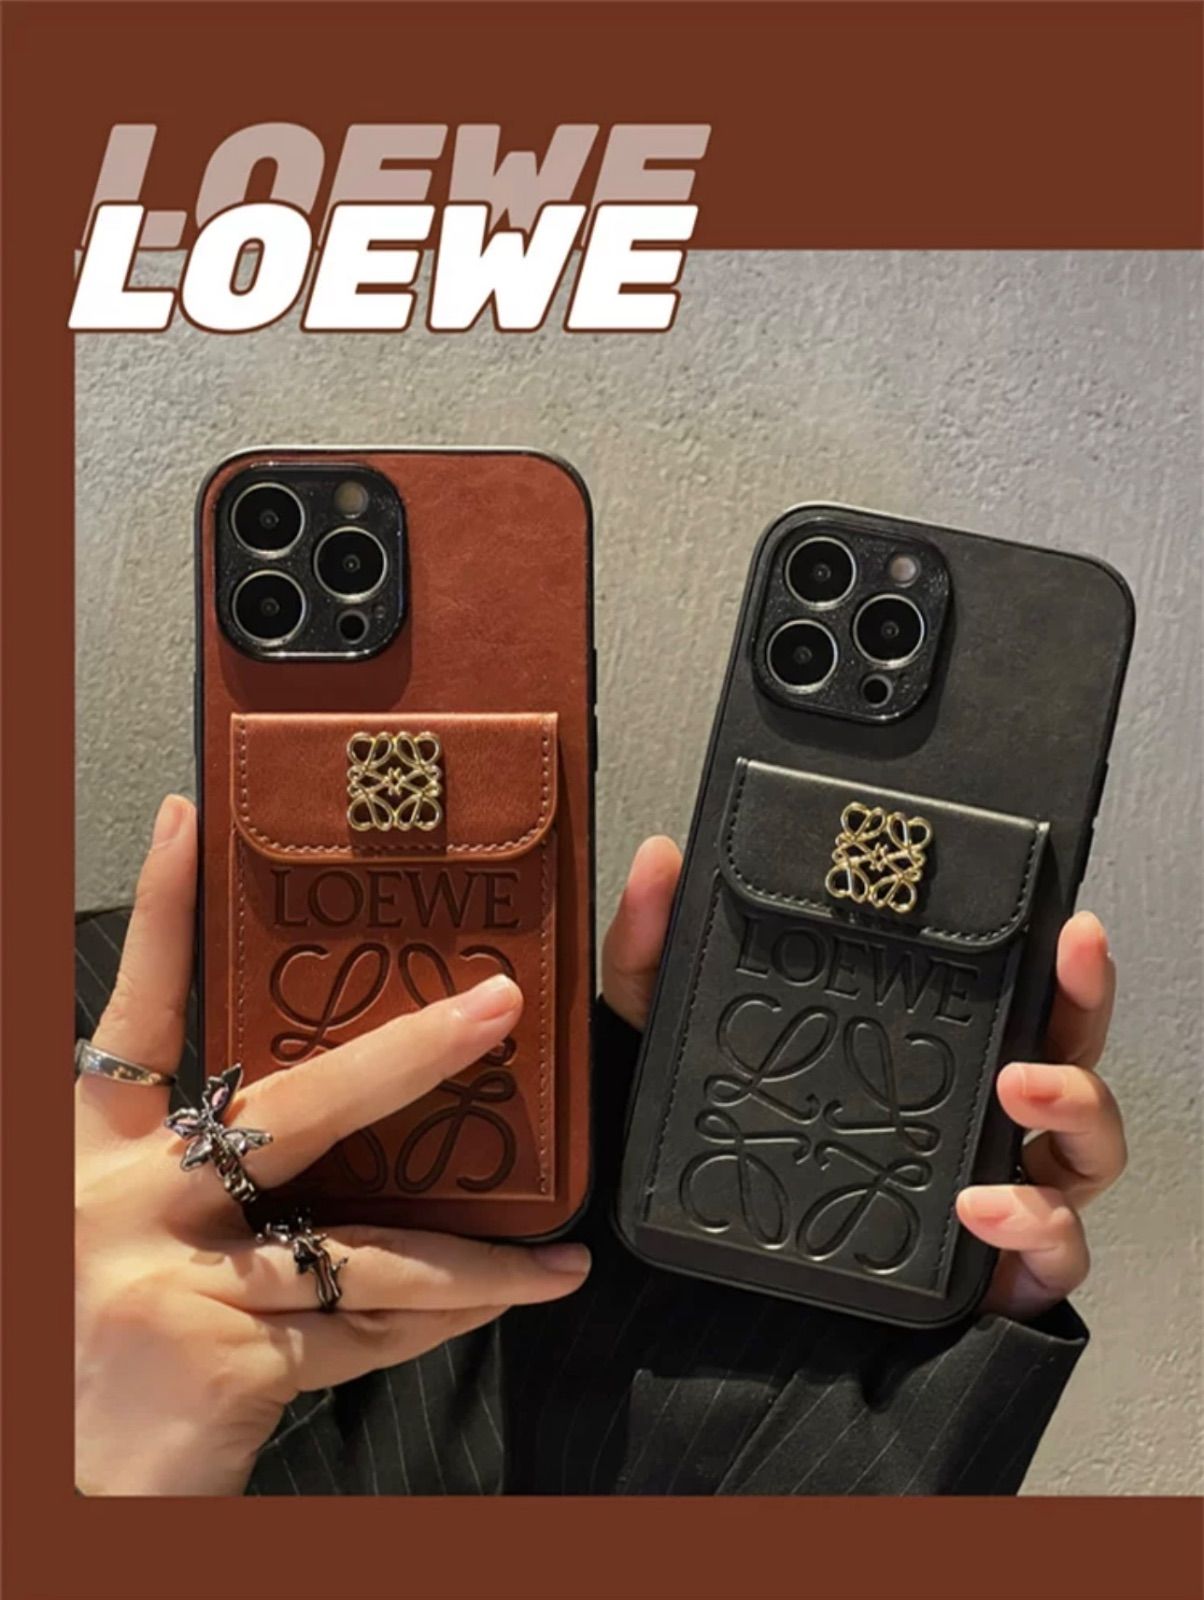 LOEWE iPhone スマホカバー カードケース付き ノベルティ - メルカリ